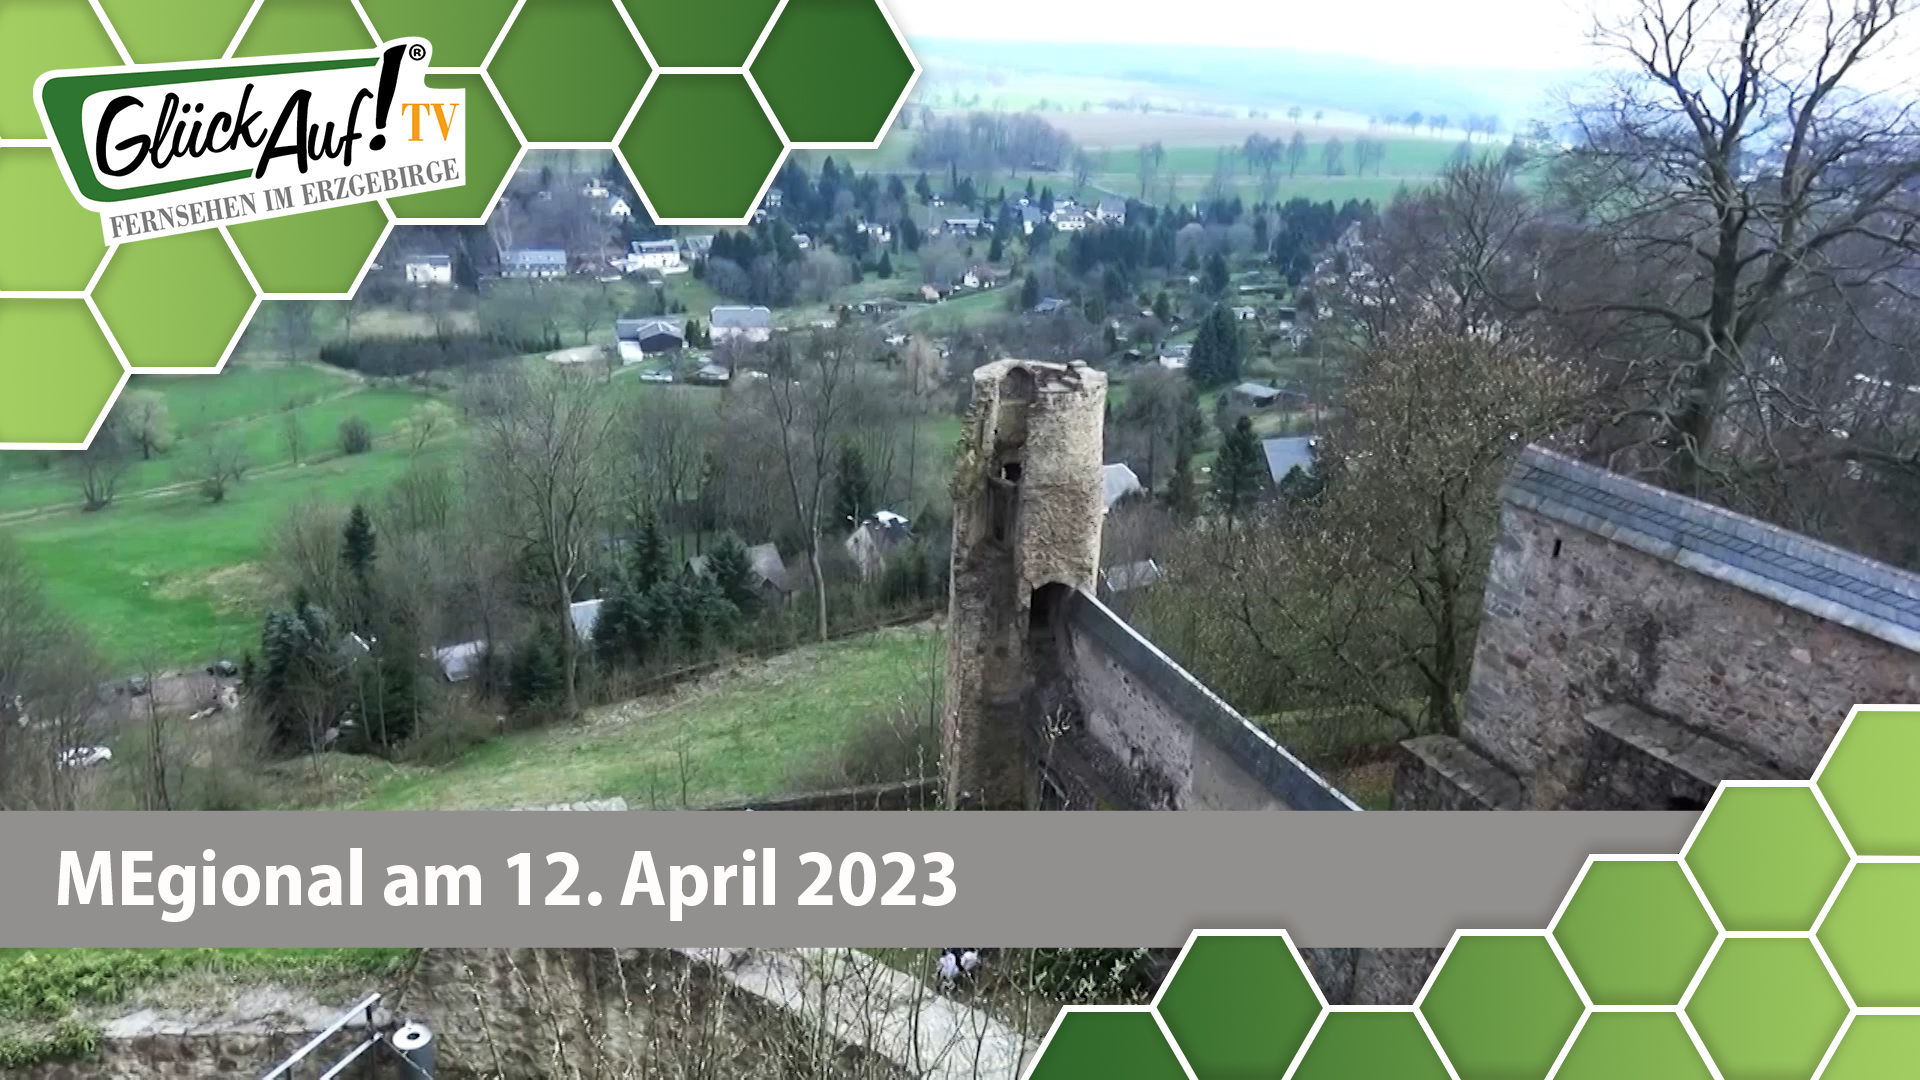 MEgional am 12. April 2023 u.a. mit Ausflugstippsfür das Erzgebirge und Mittelsachsen